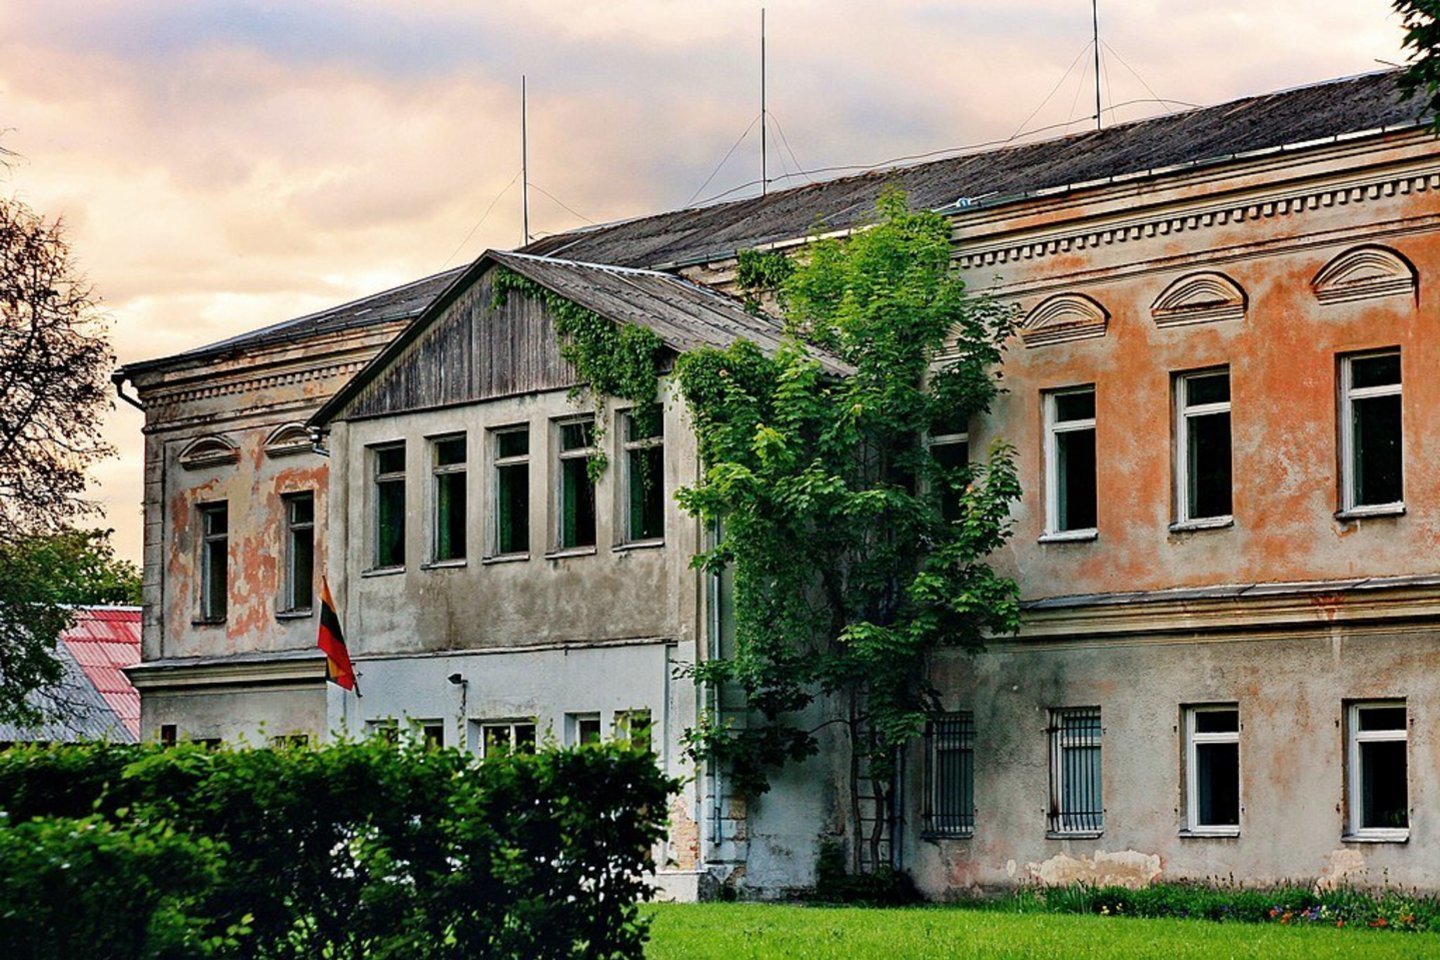 Trečias brangiausiai parduotas objektas buvo netoli Vilniaus esantis istorinis Buivydiškių dvaras.<br>Turto banko nuotr.